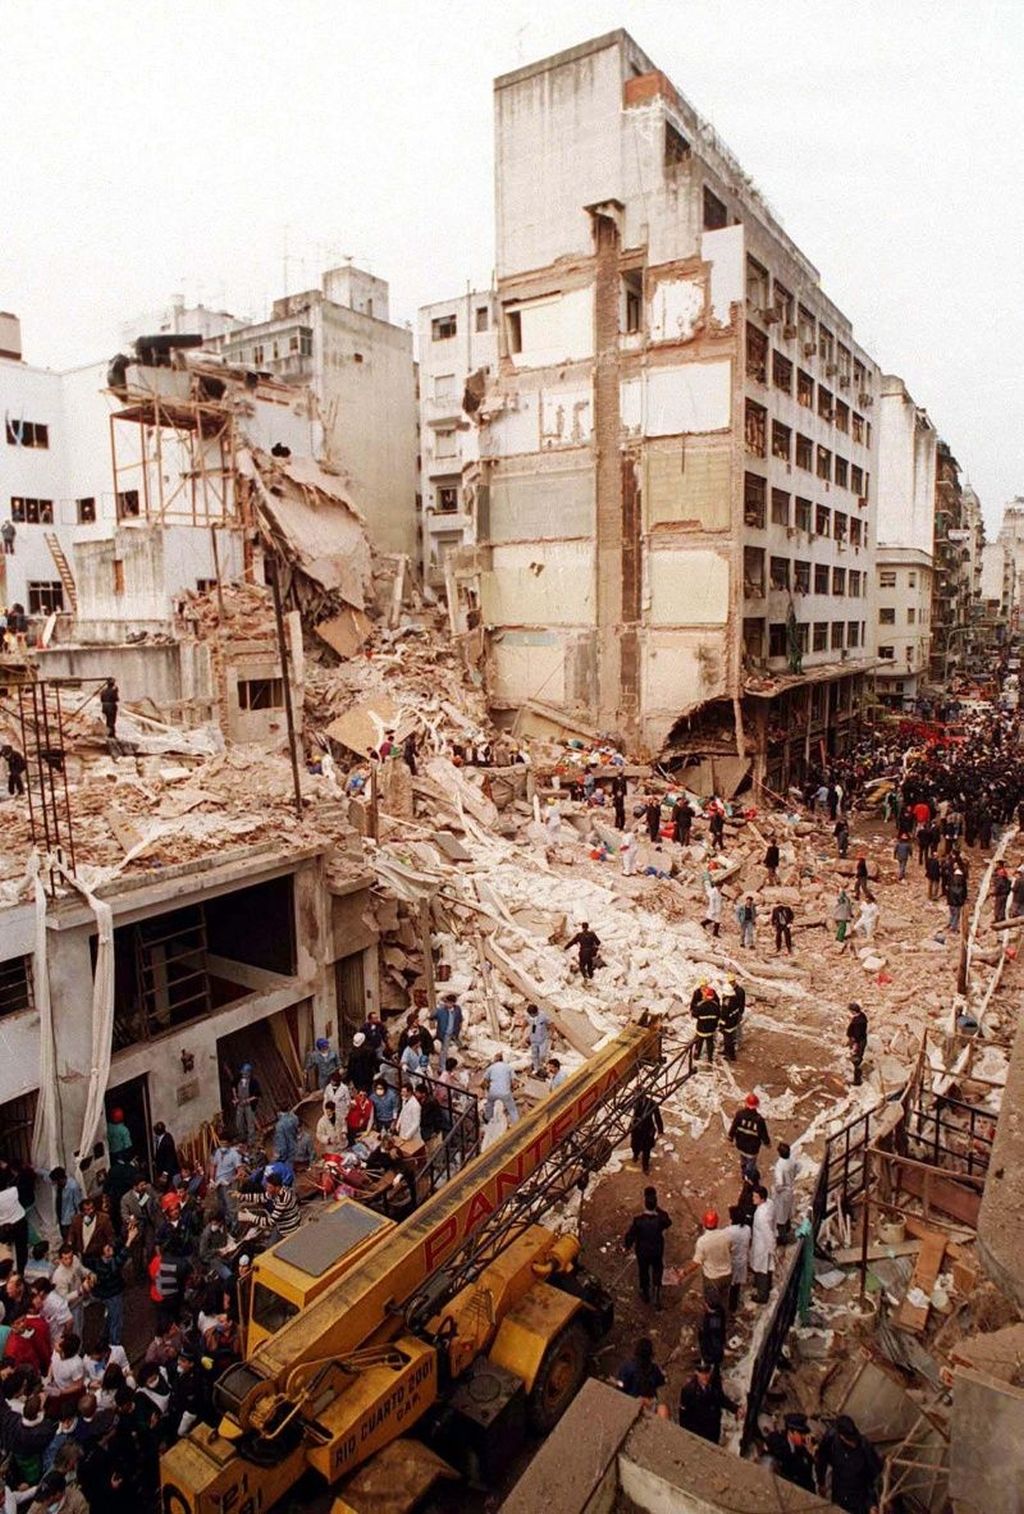 El atentado contra la AMIA, 1994 (Foto: Wikimedia Commons)